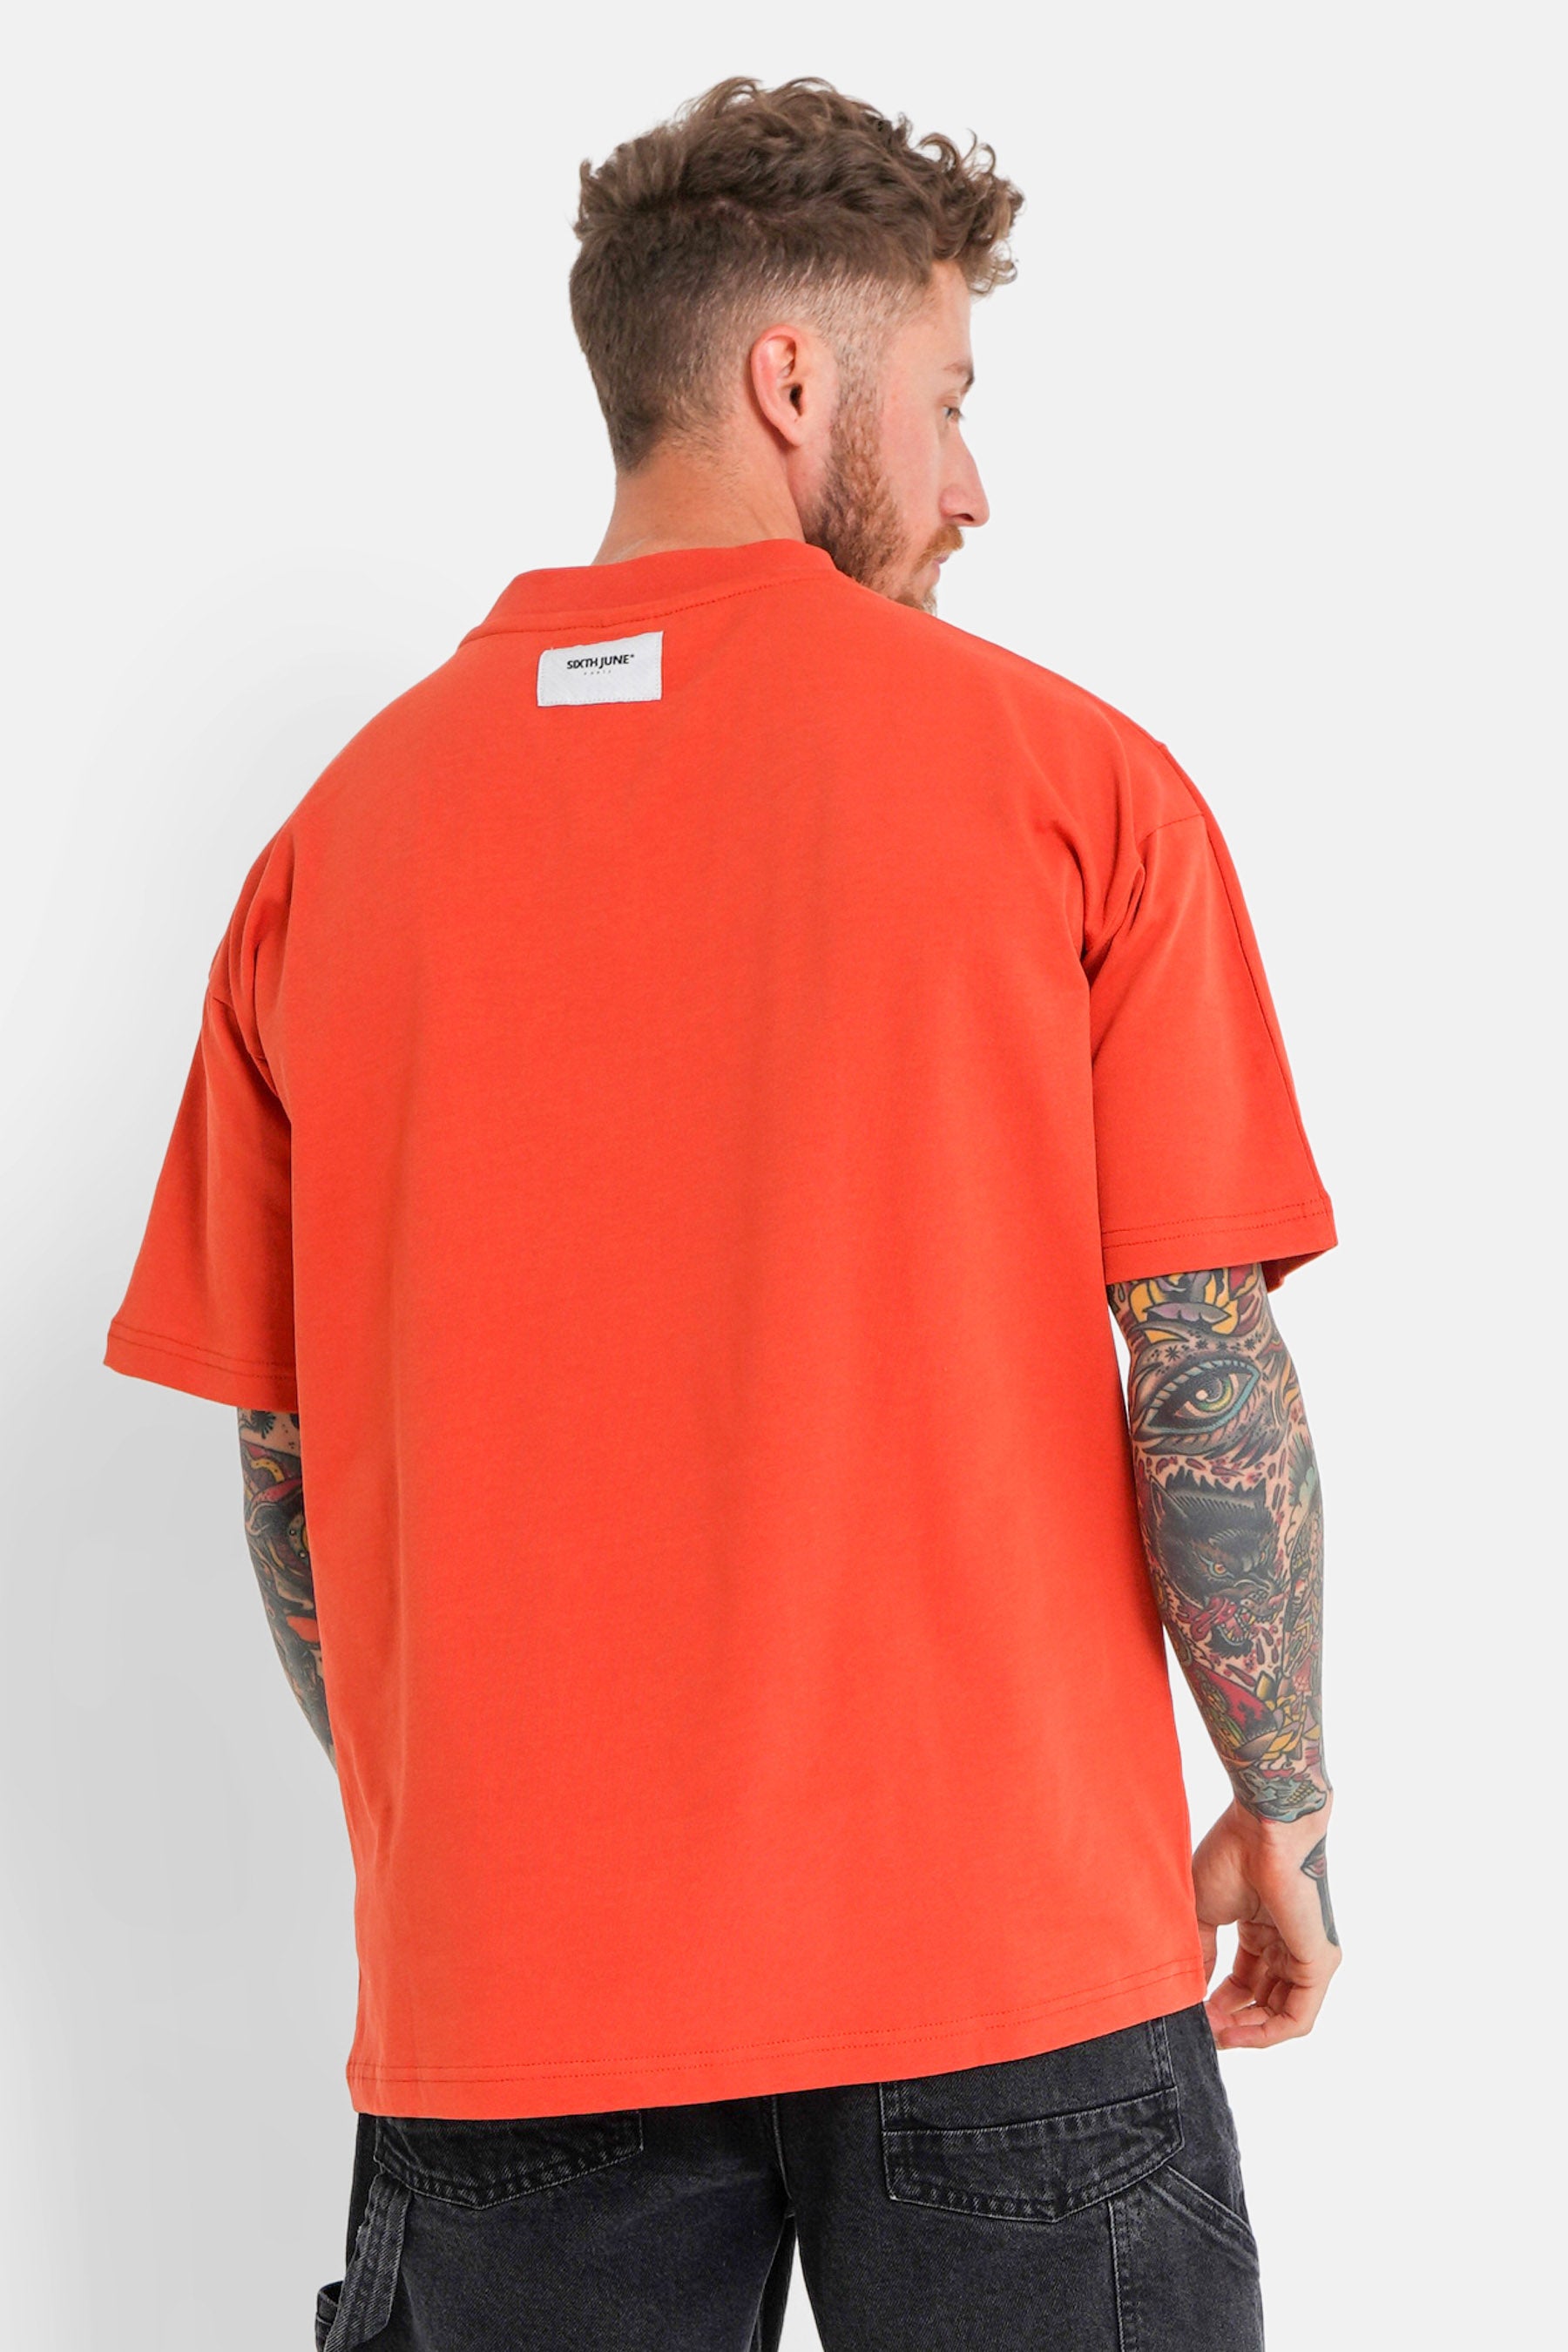 Orangefarbenes T-Shirt mit Logo-Patch auf der Rückseite